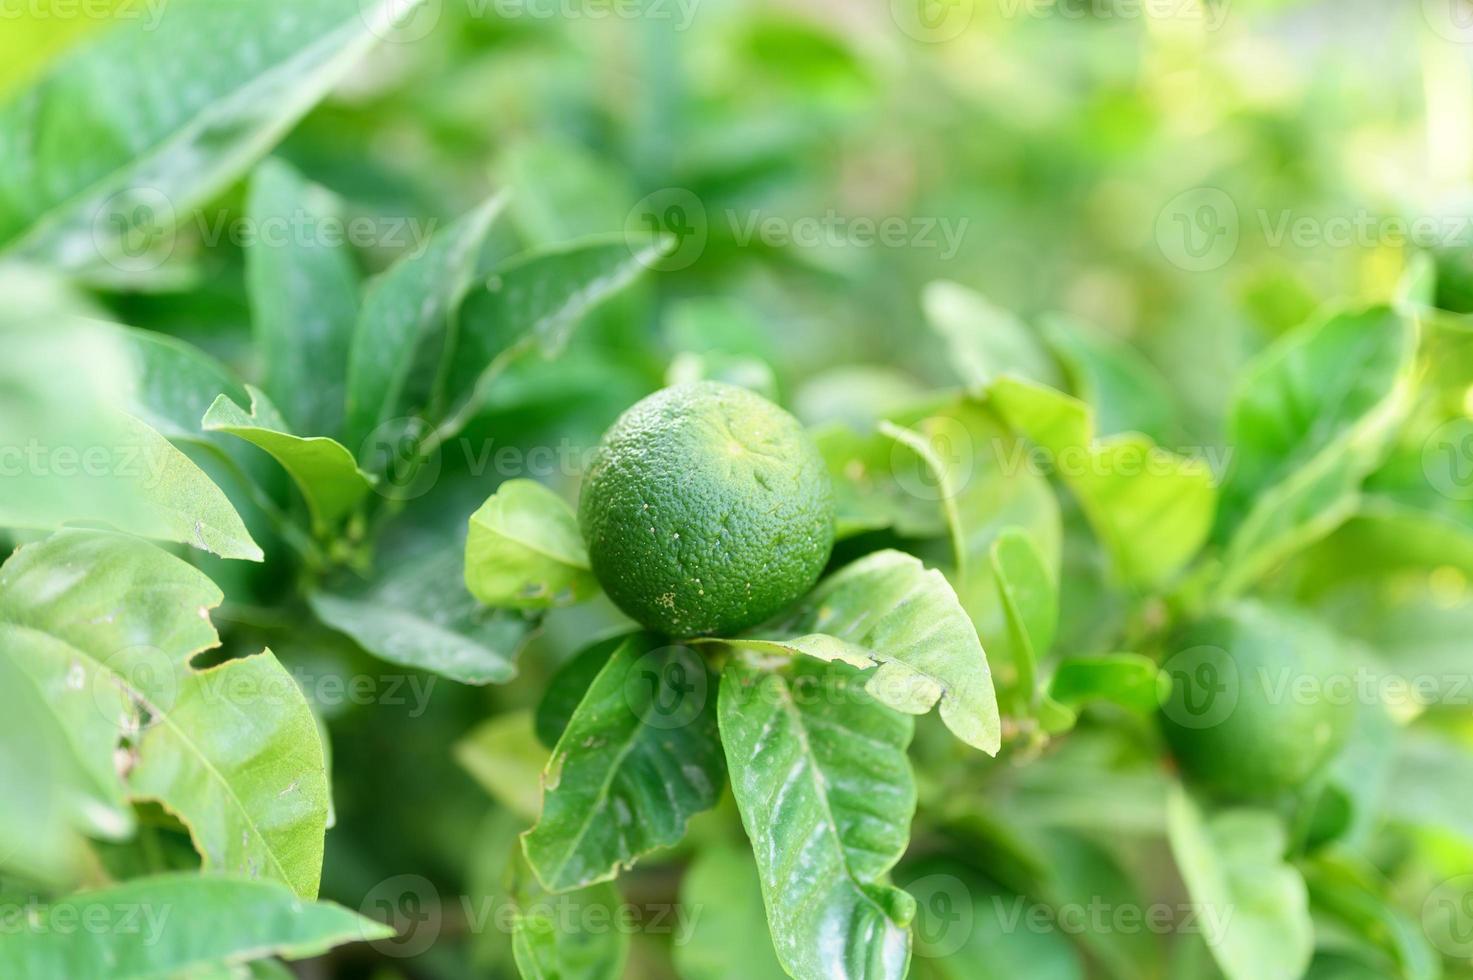 Unripe green lemons on a tree in the garden photo